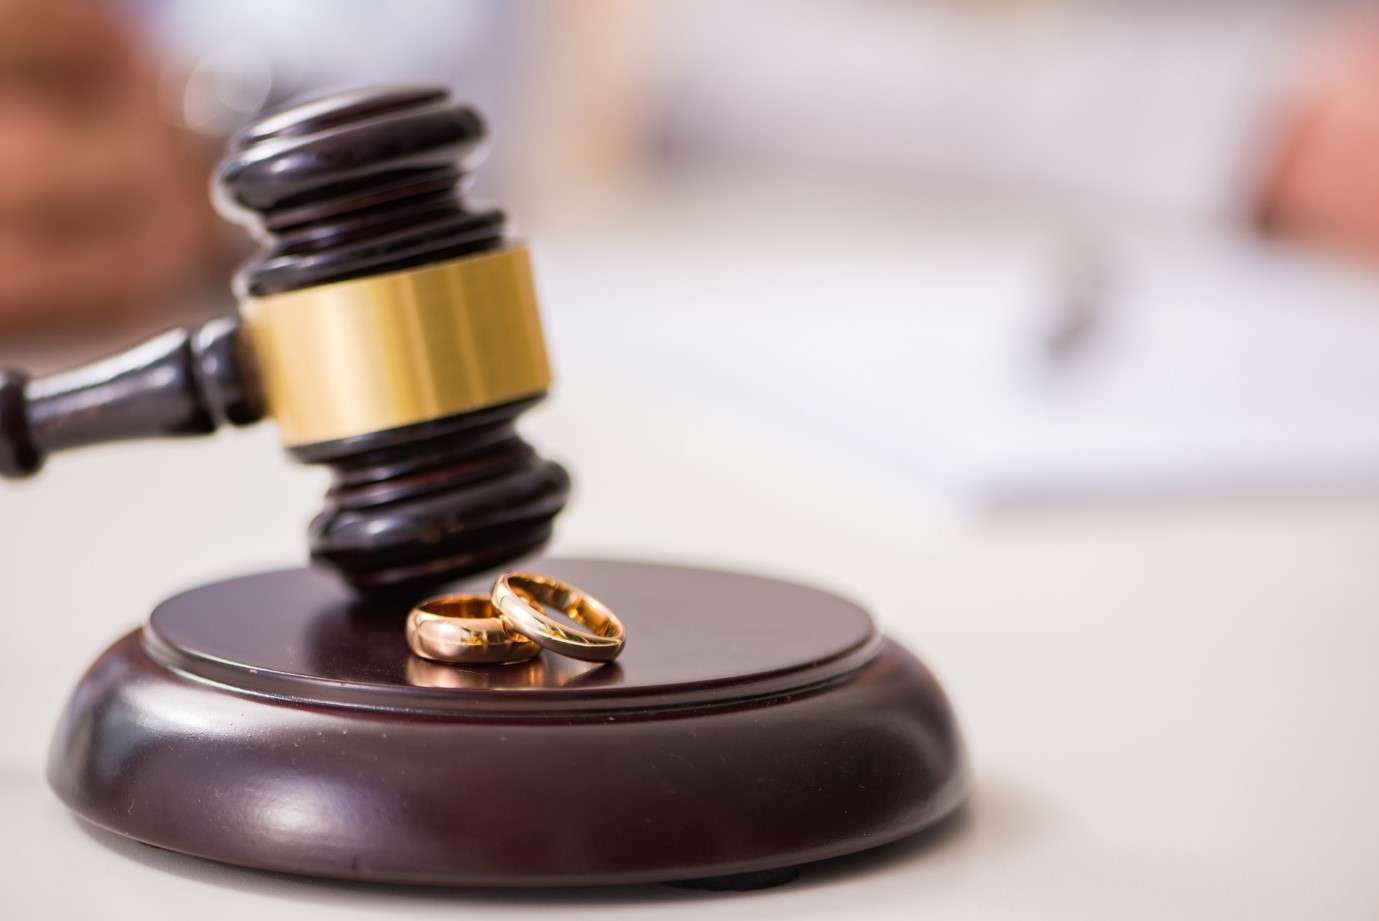 بررسی ادله شخص برای طلاق غیابی و صدور حکم